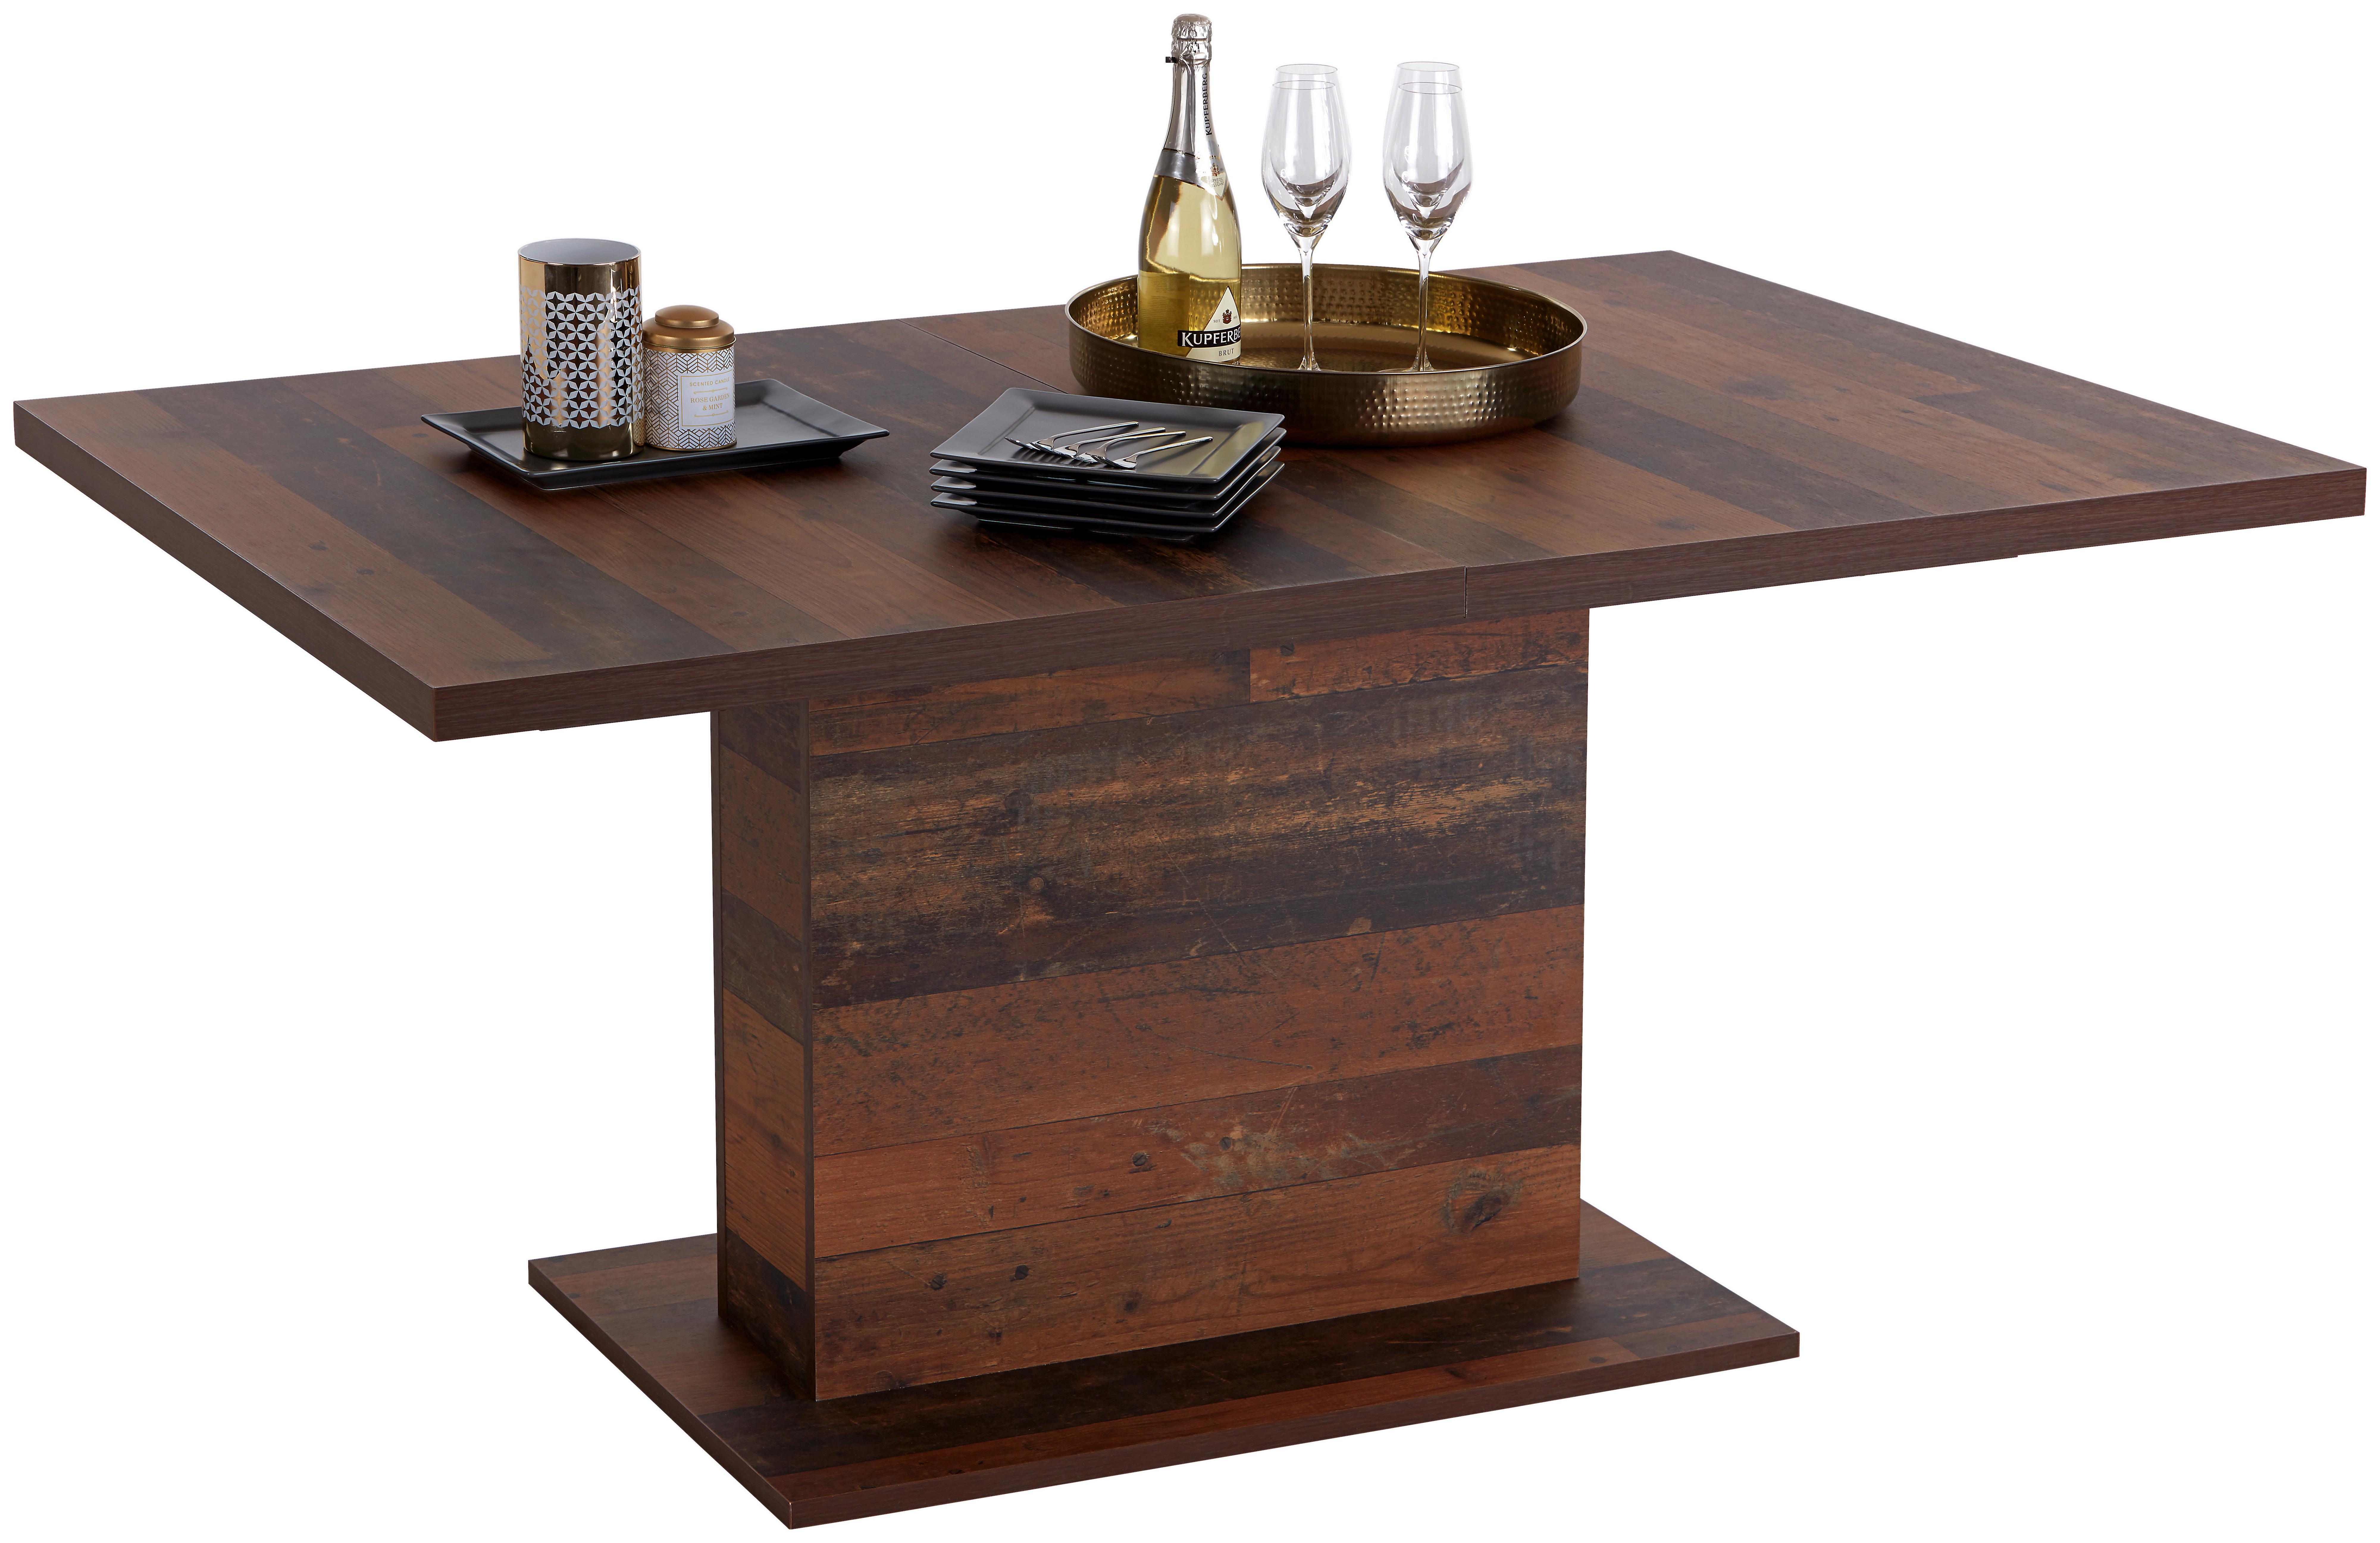 Výsuvný Stůl Ontario 160 Az - barvy dubu, Moderní, kompozitní dřevo (160-200/76/90cm) - Ondega